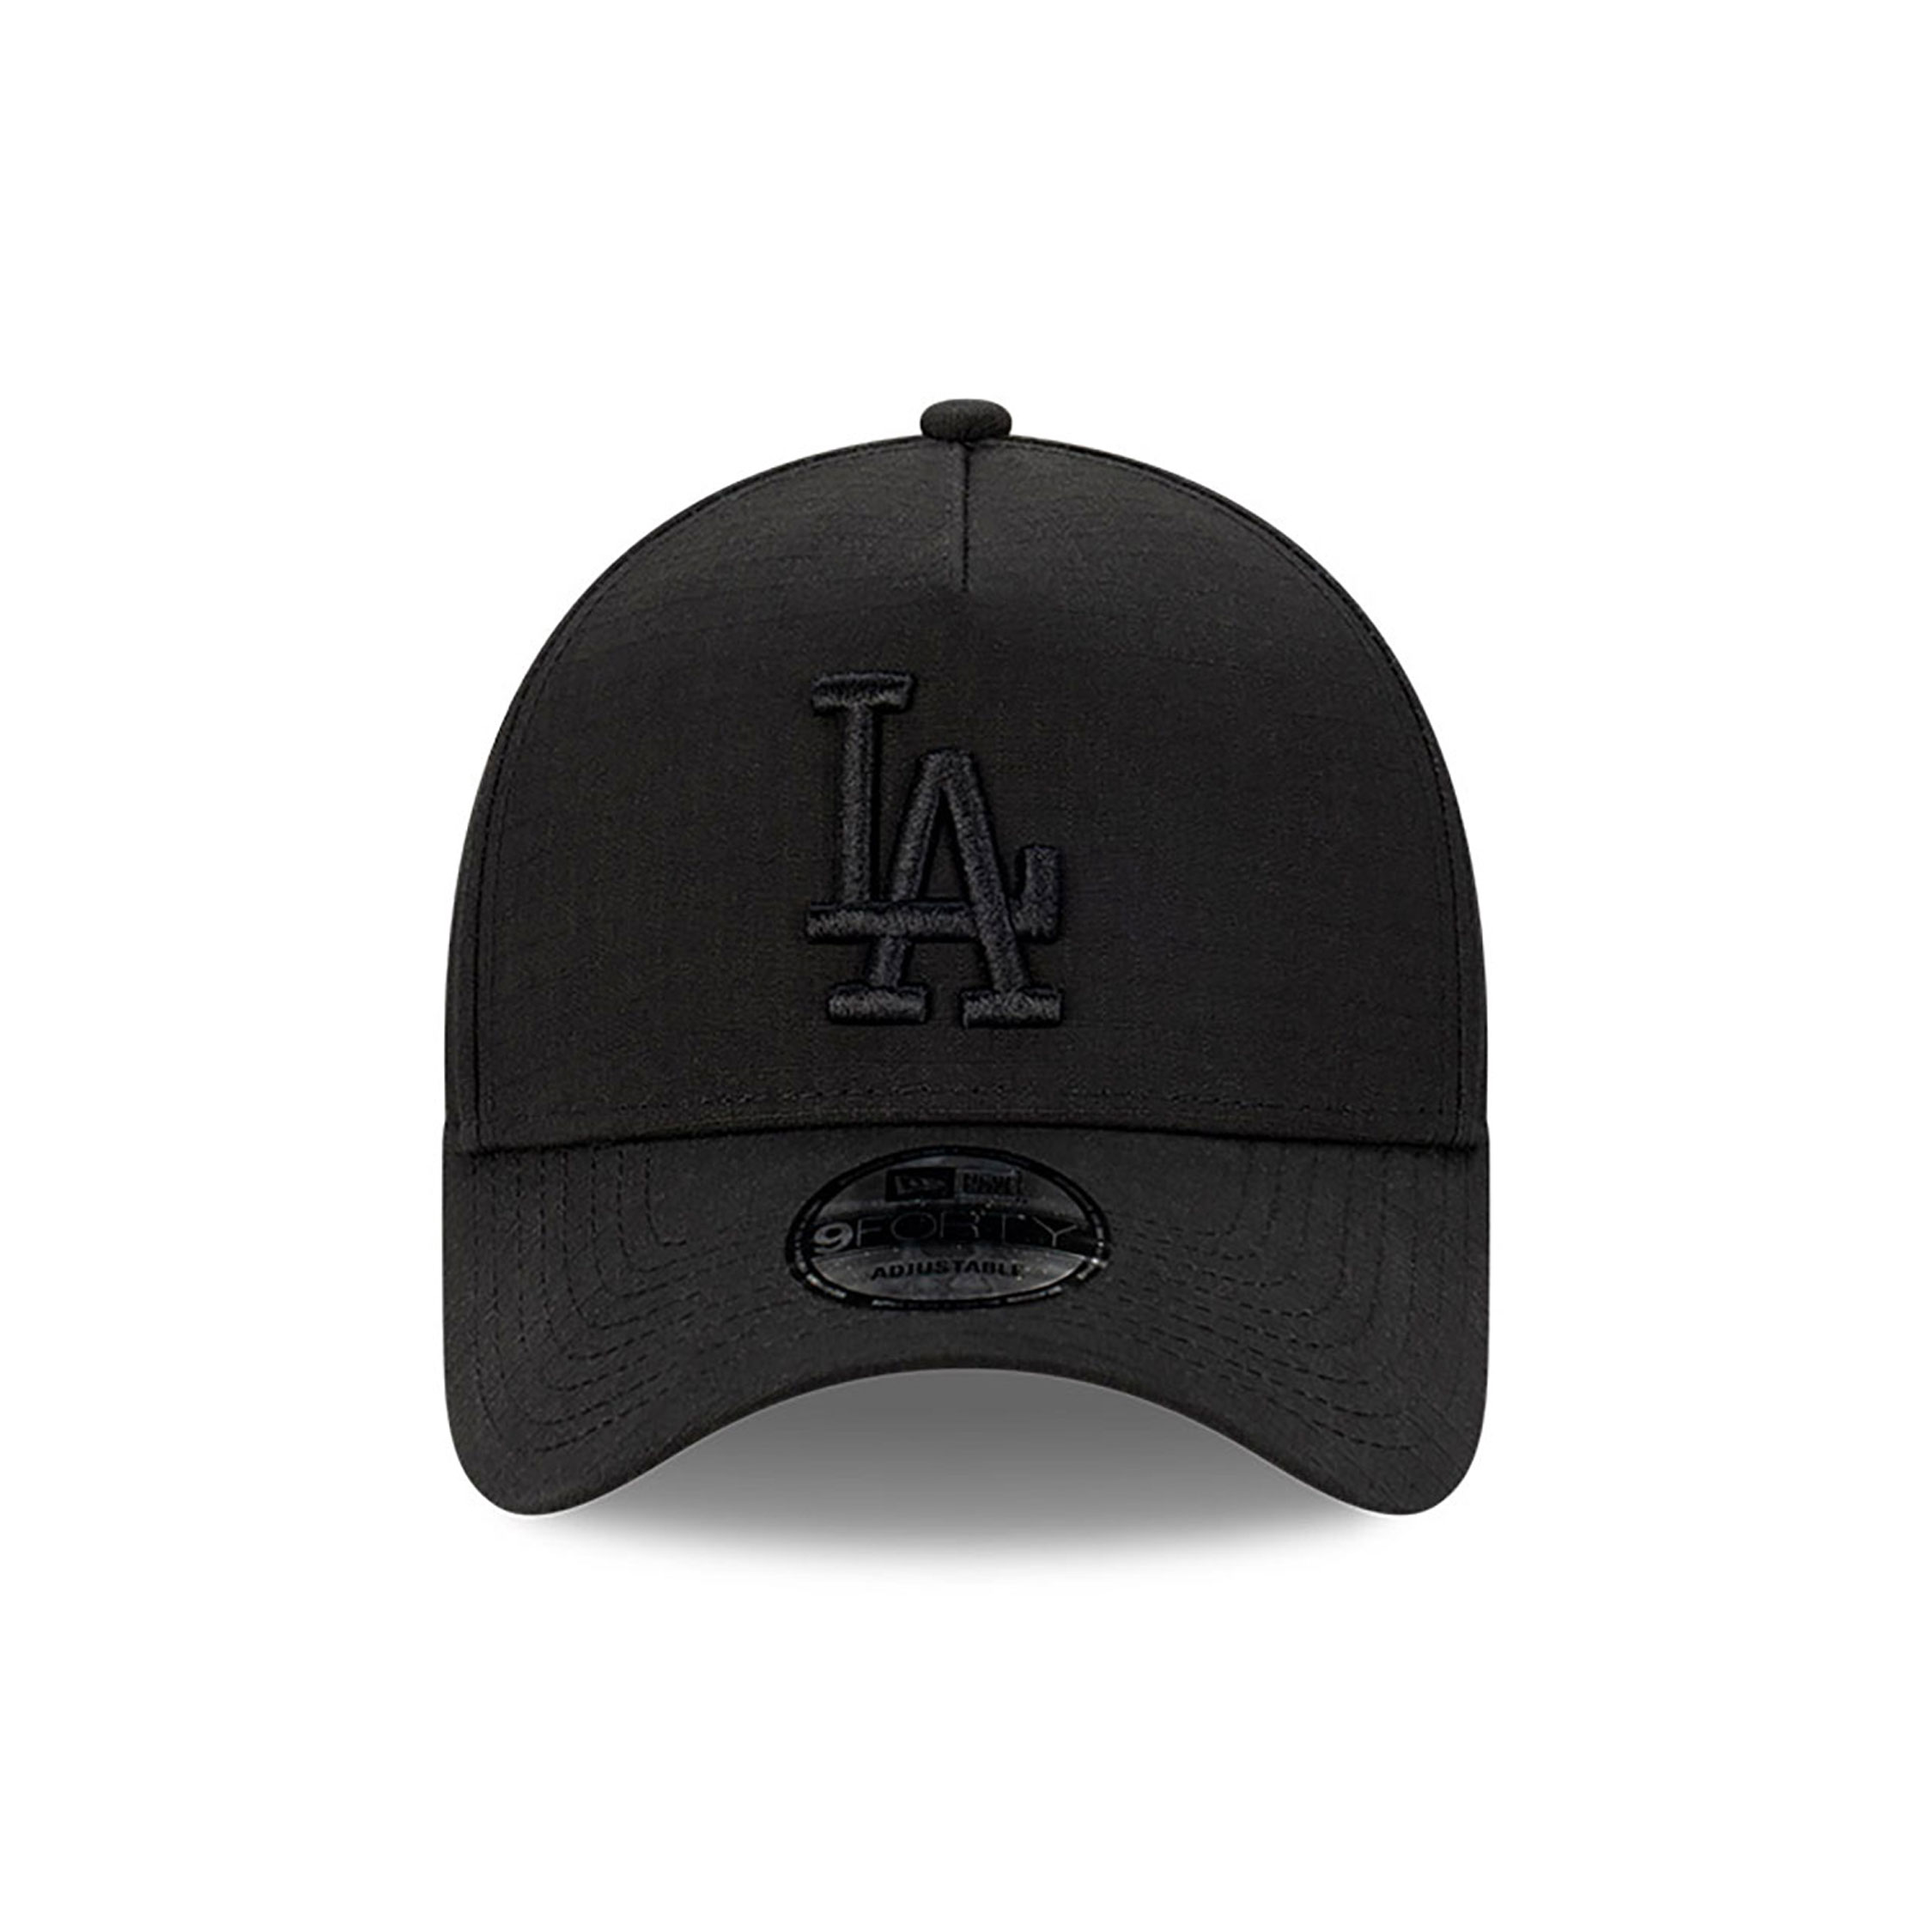 LA Dodgers Black Ripstop Black 9FORTY A-Frame Adjustable Cap